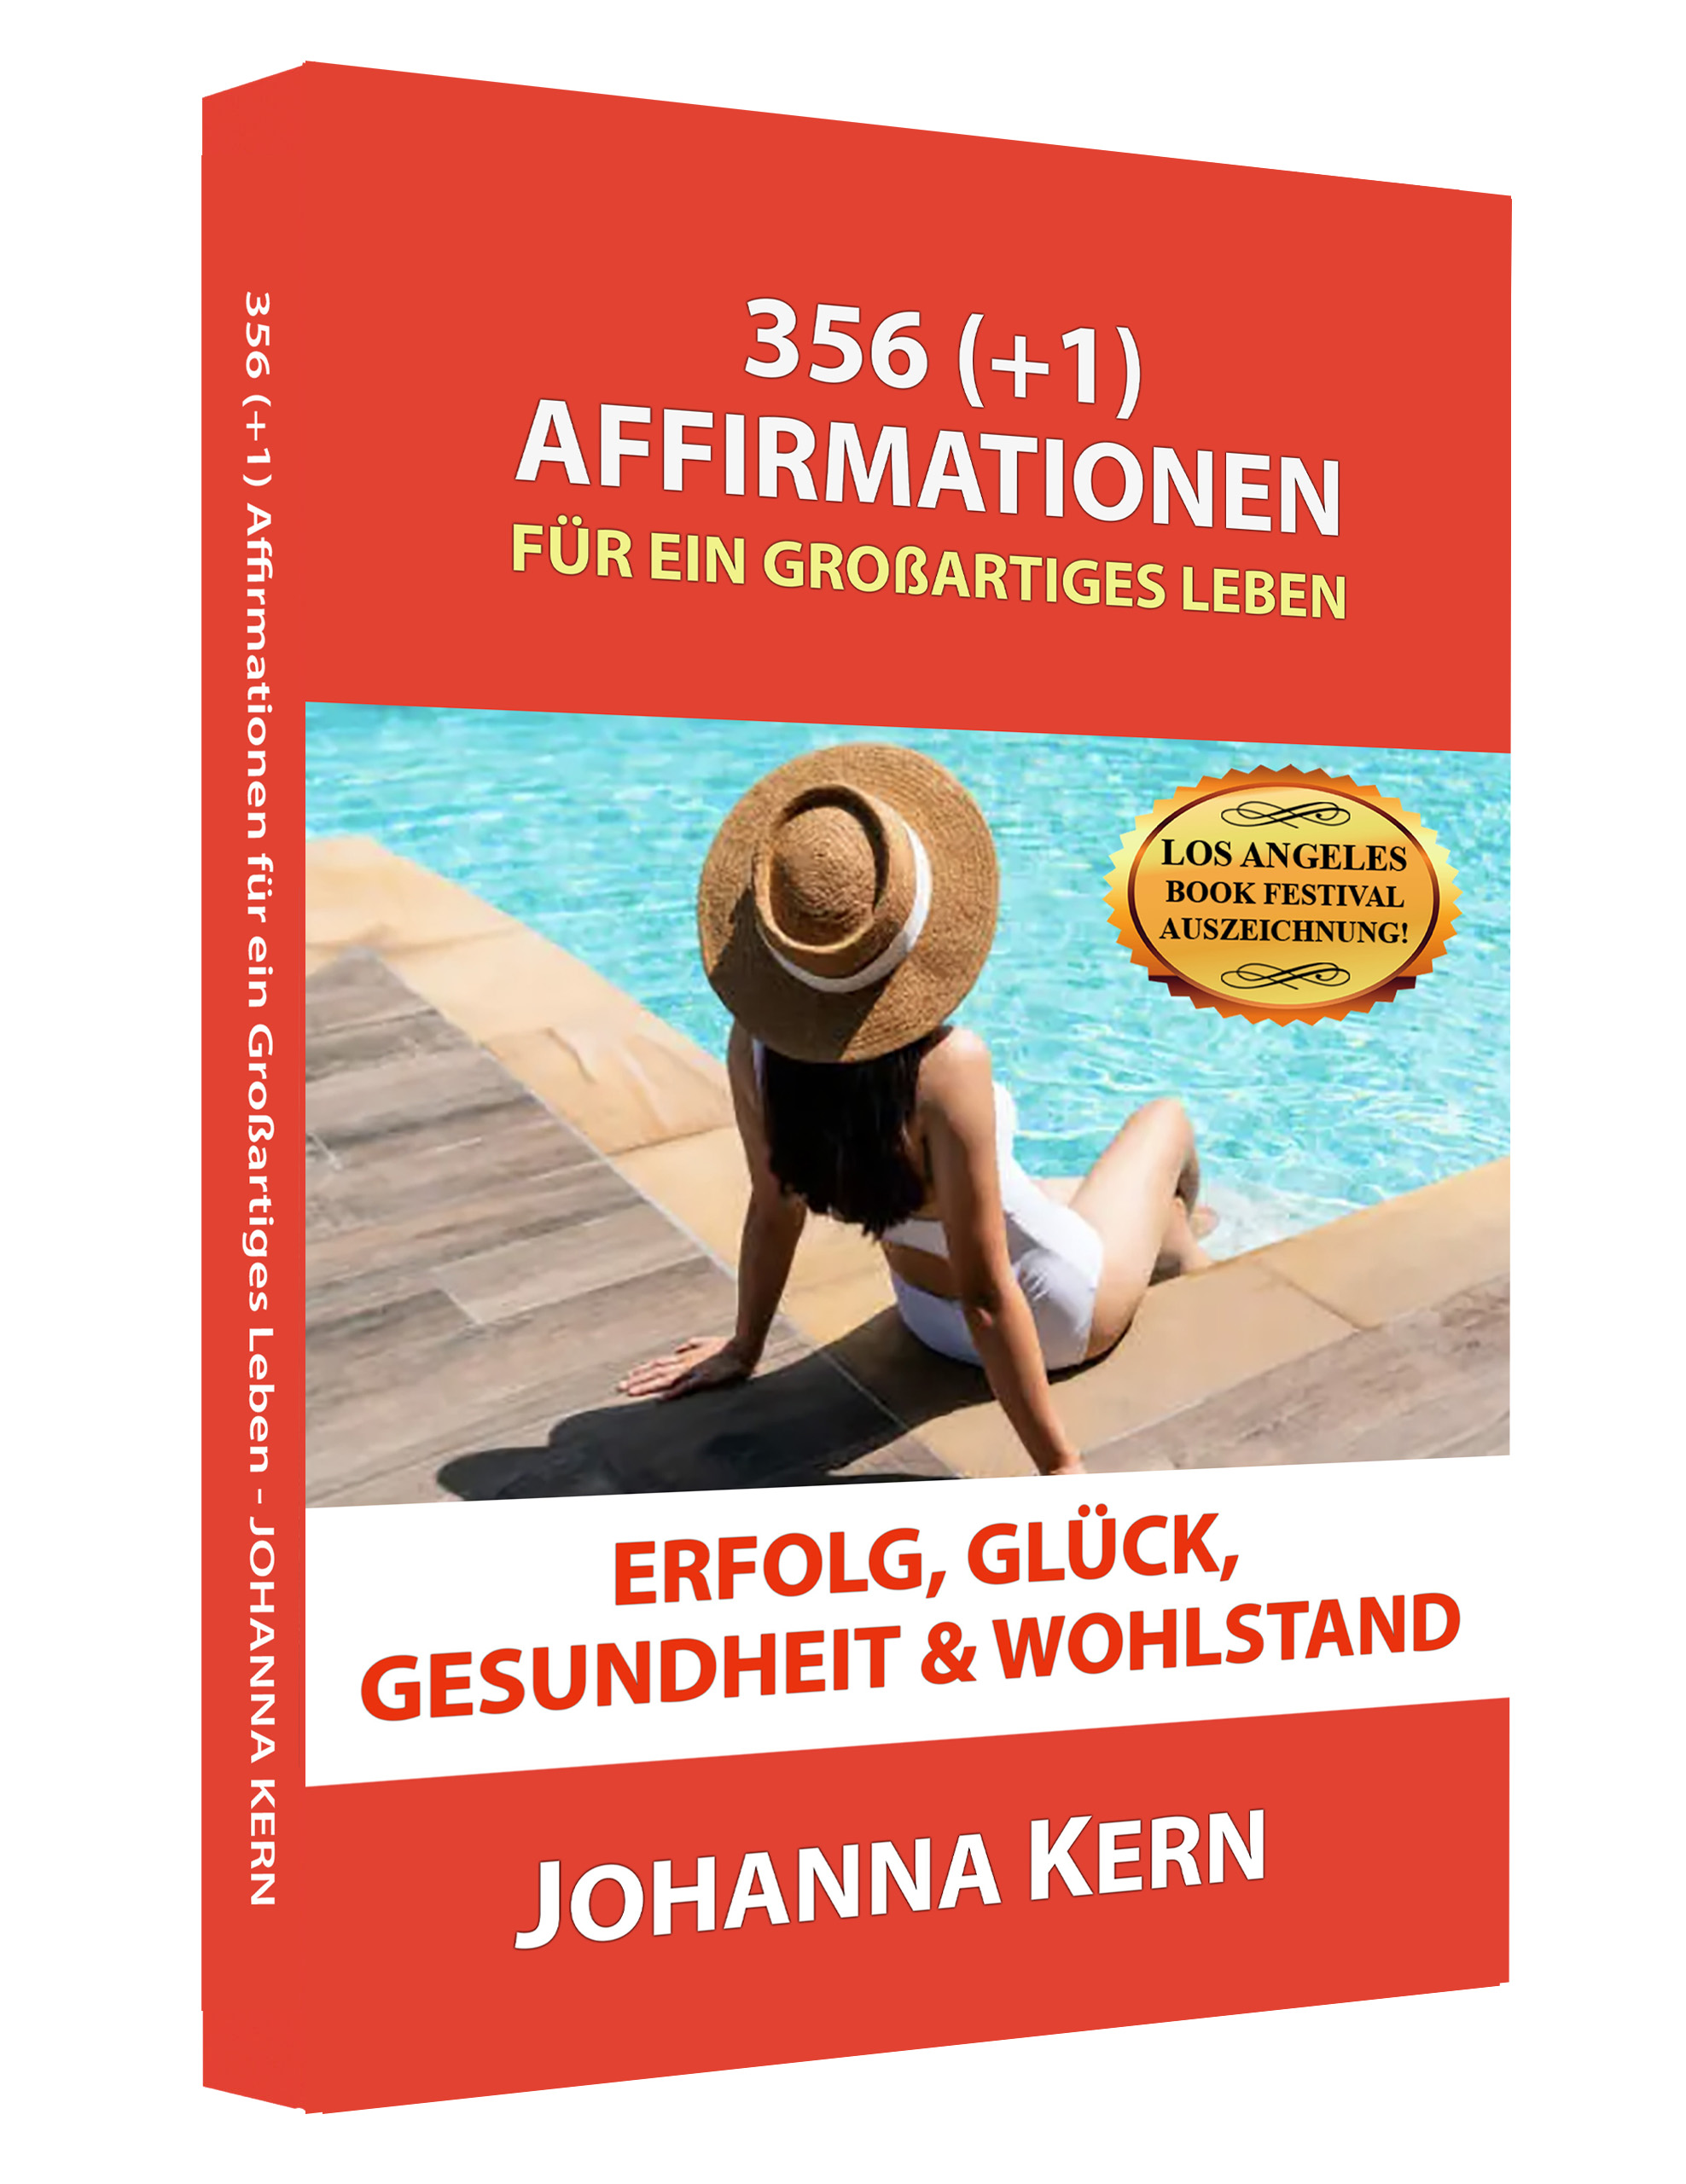 365 (+1) Affirmationen von Johanna Kern